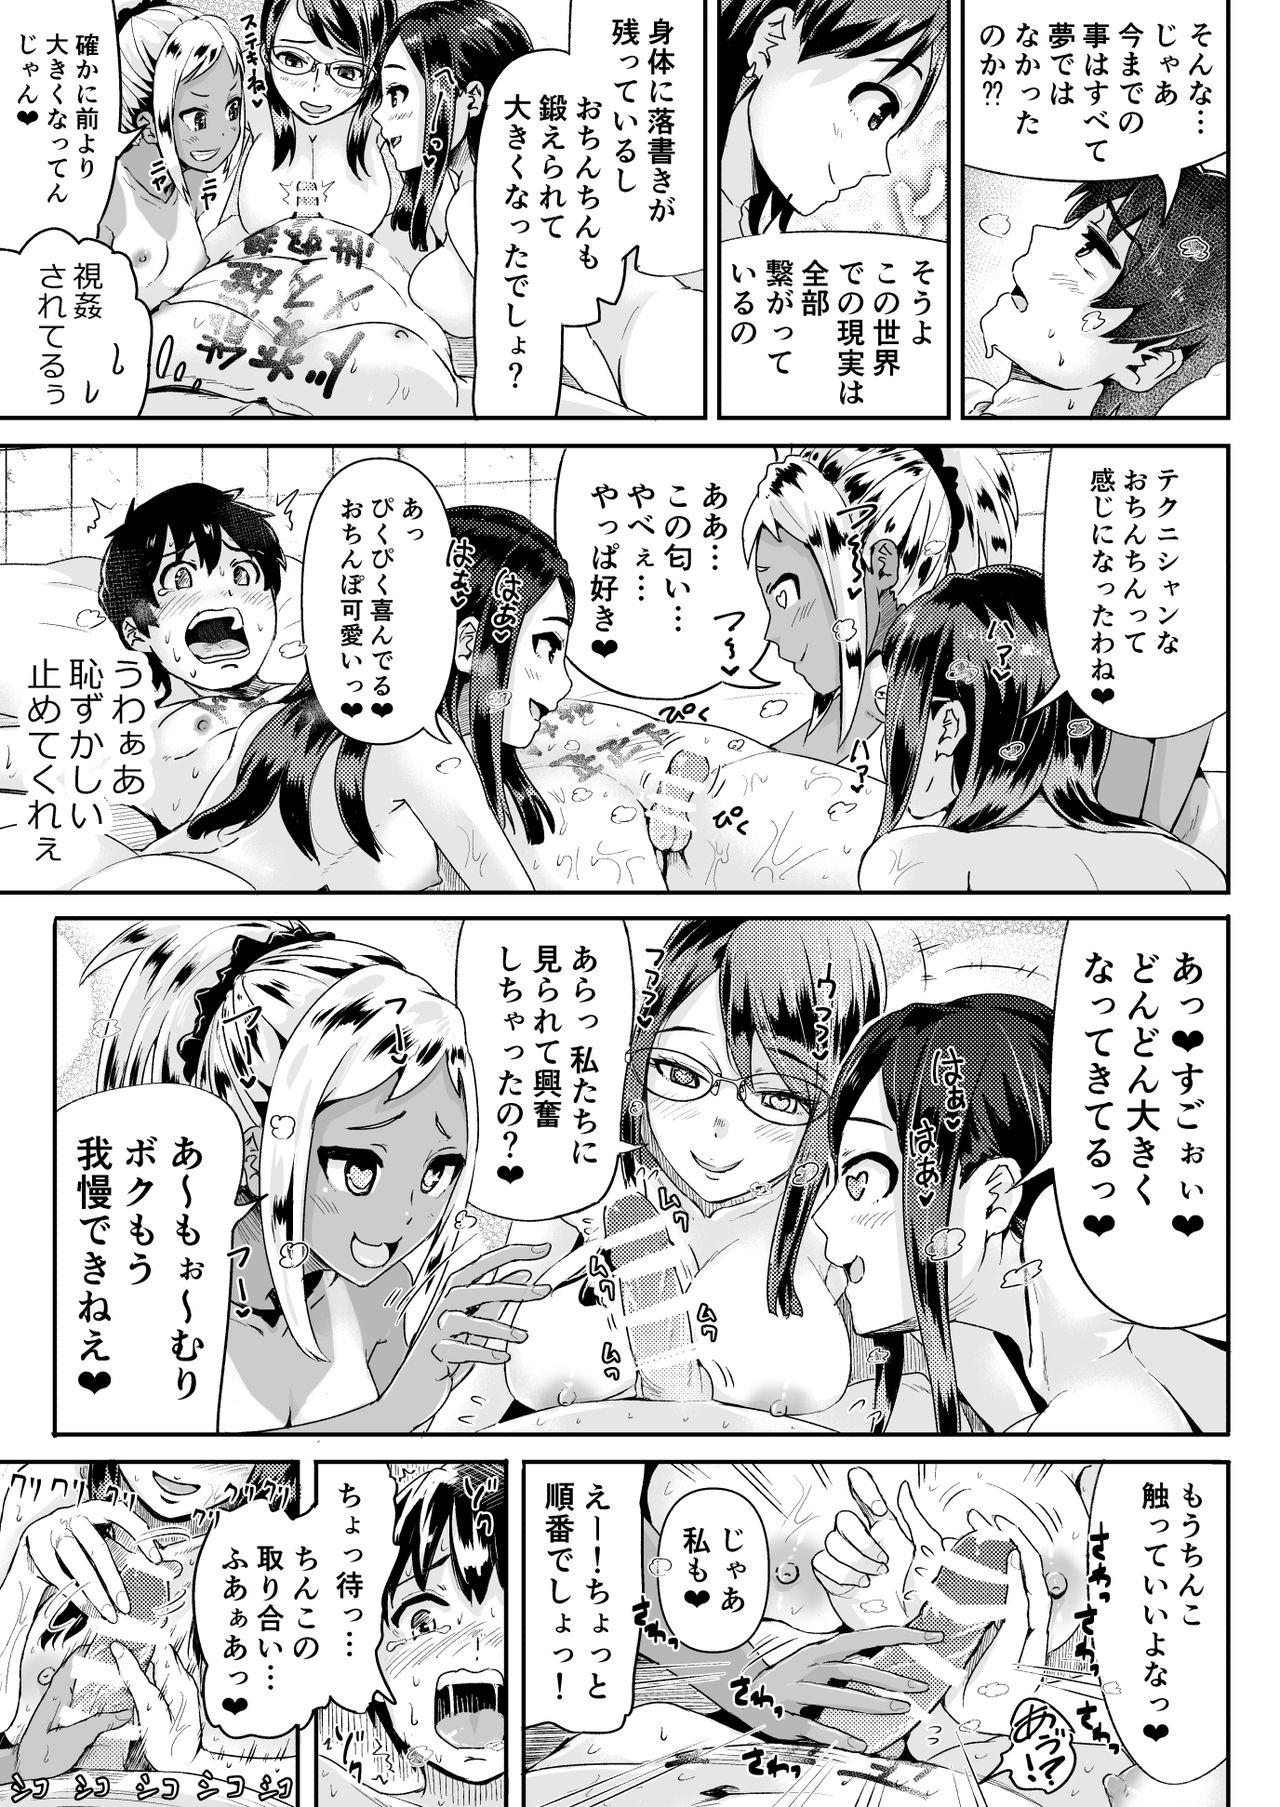 Famosa Doutei no Ore o Yuuwaku suru Ecchi na Joshi-tachi!? 12 - Original 18 Year Old - Page 6